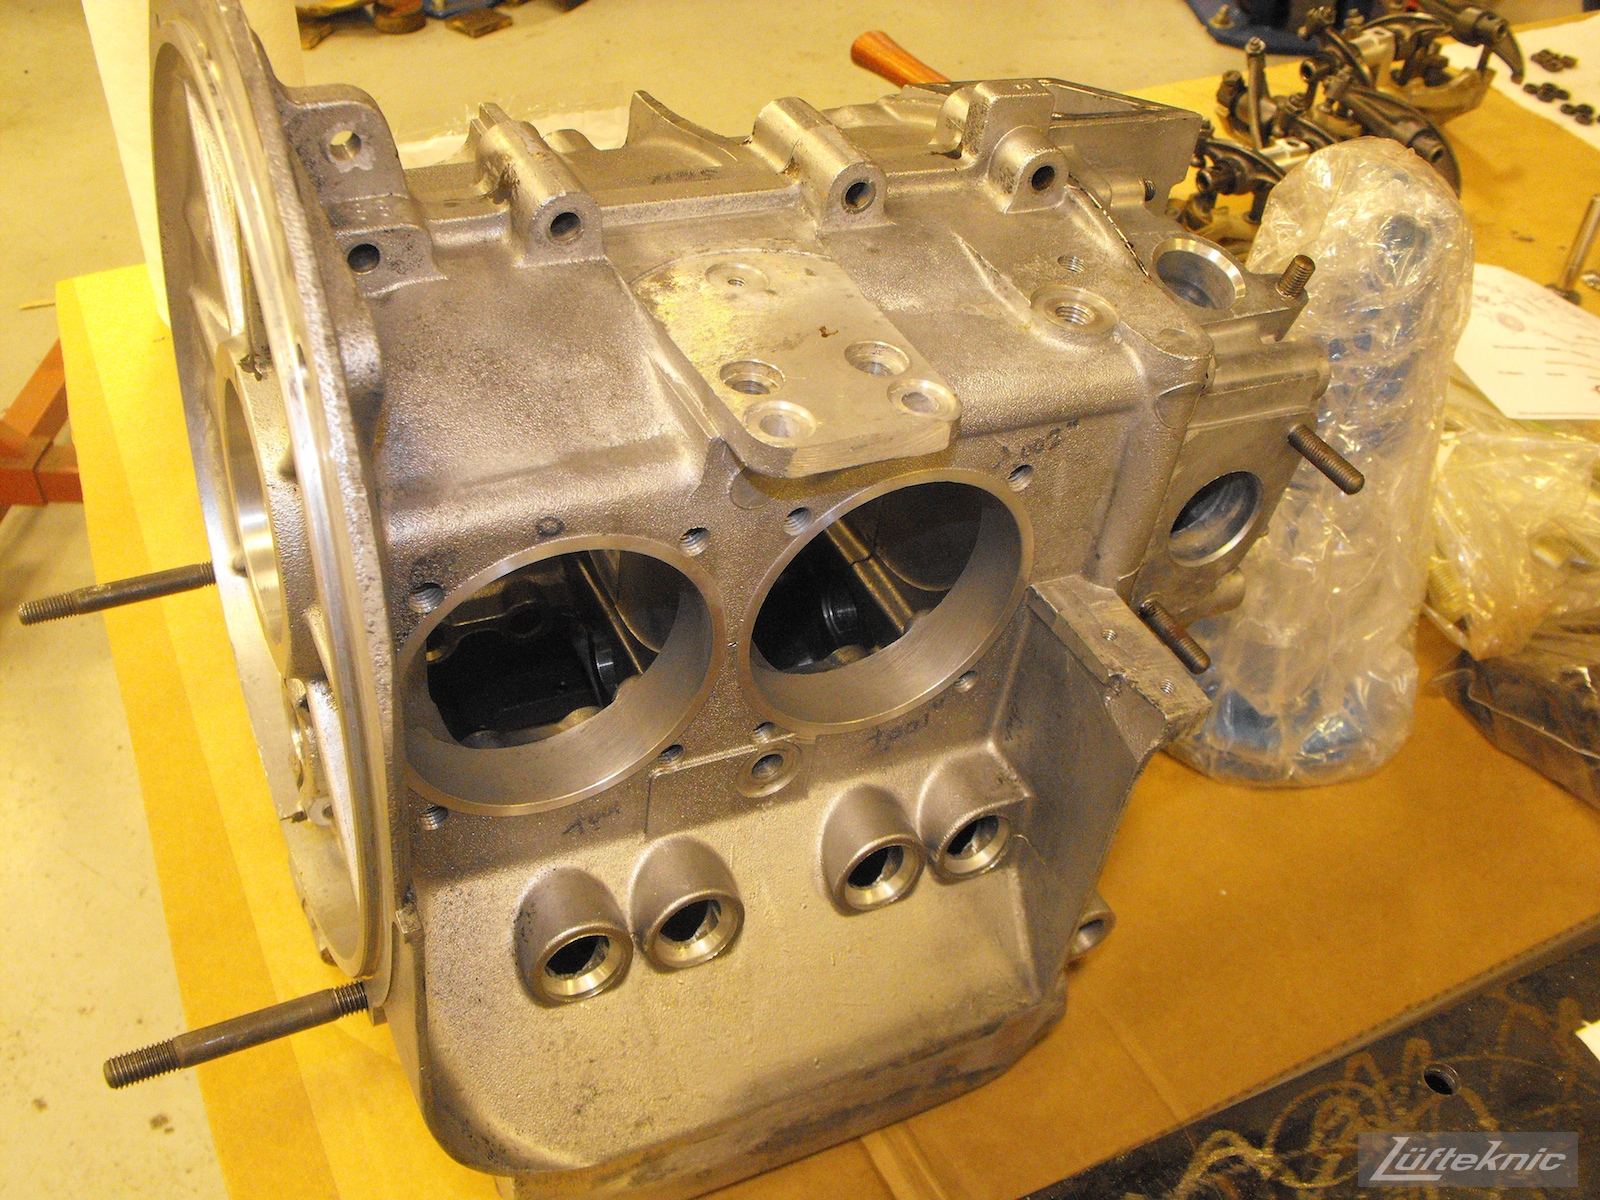 Fresh engine case for an Irish Green Porsche 912 undergoing restoration at Lufteknic.